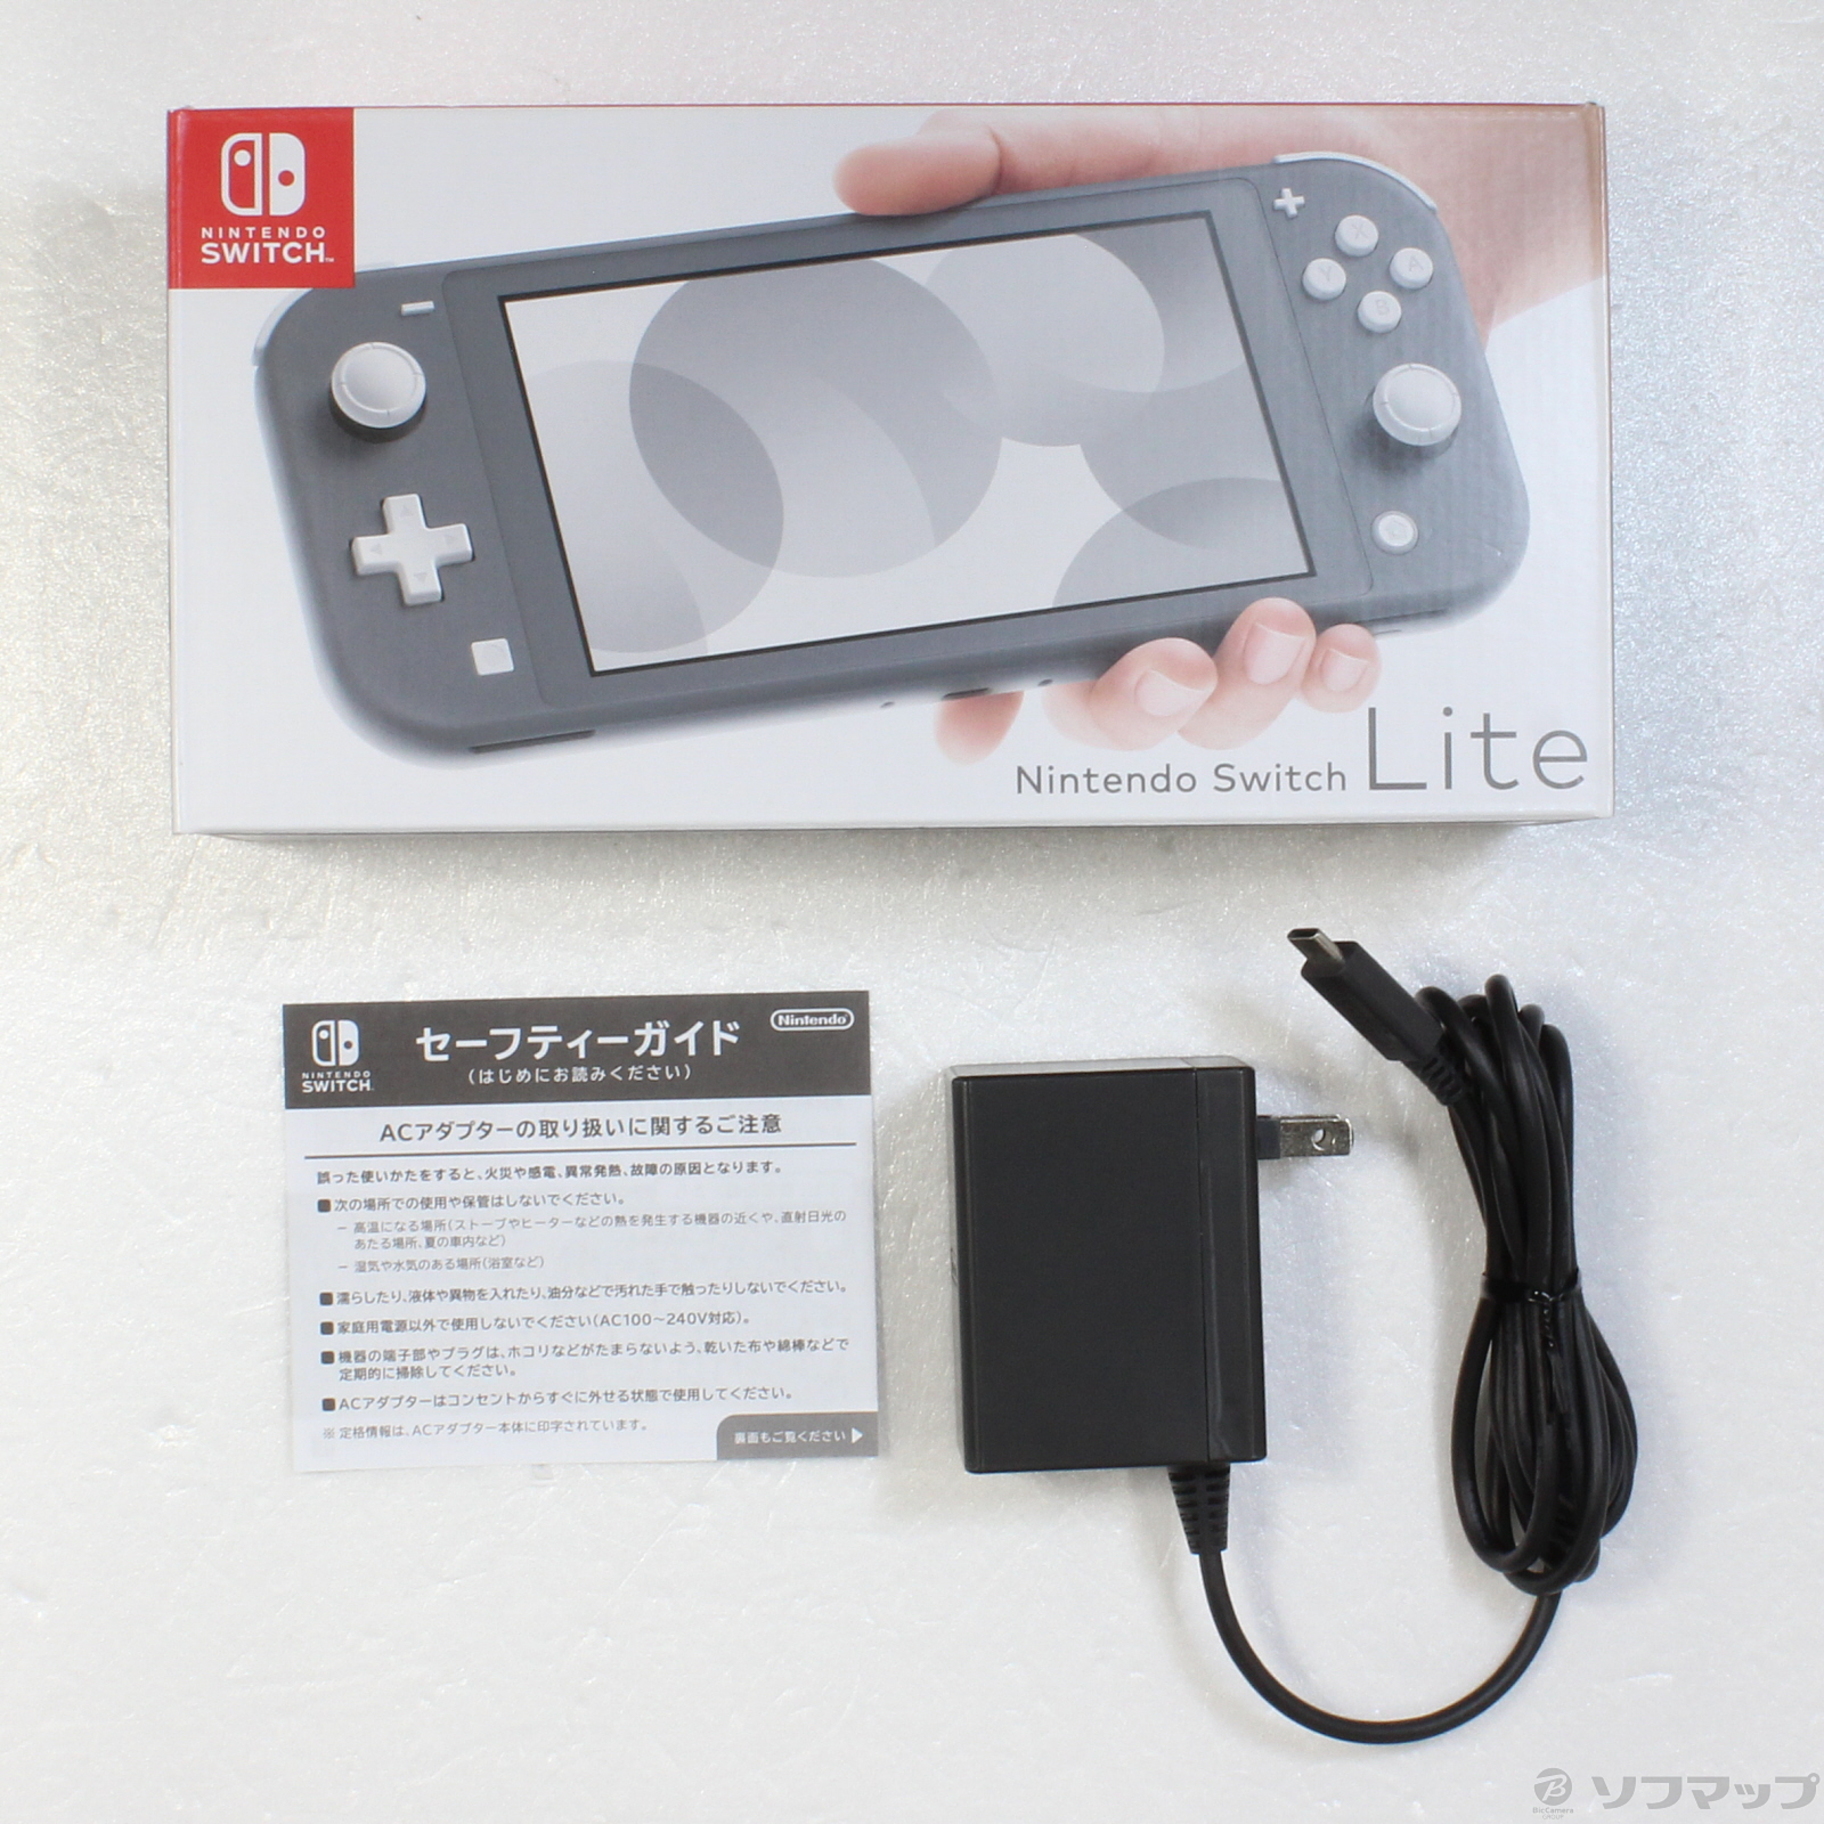 中古】セール対象品 Nintendo Switch Lite グレー ◇07/15(金)値下げ ...